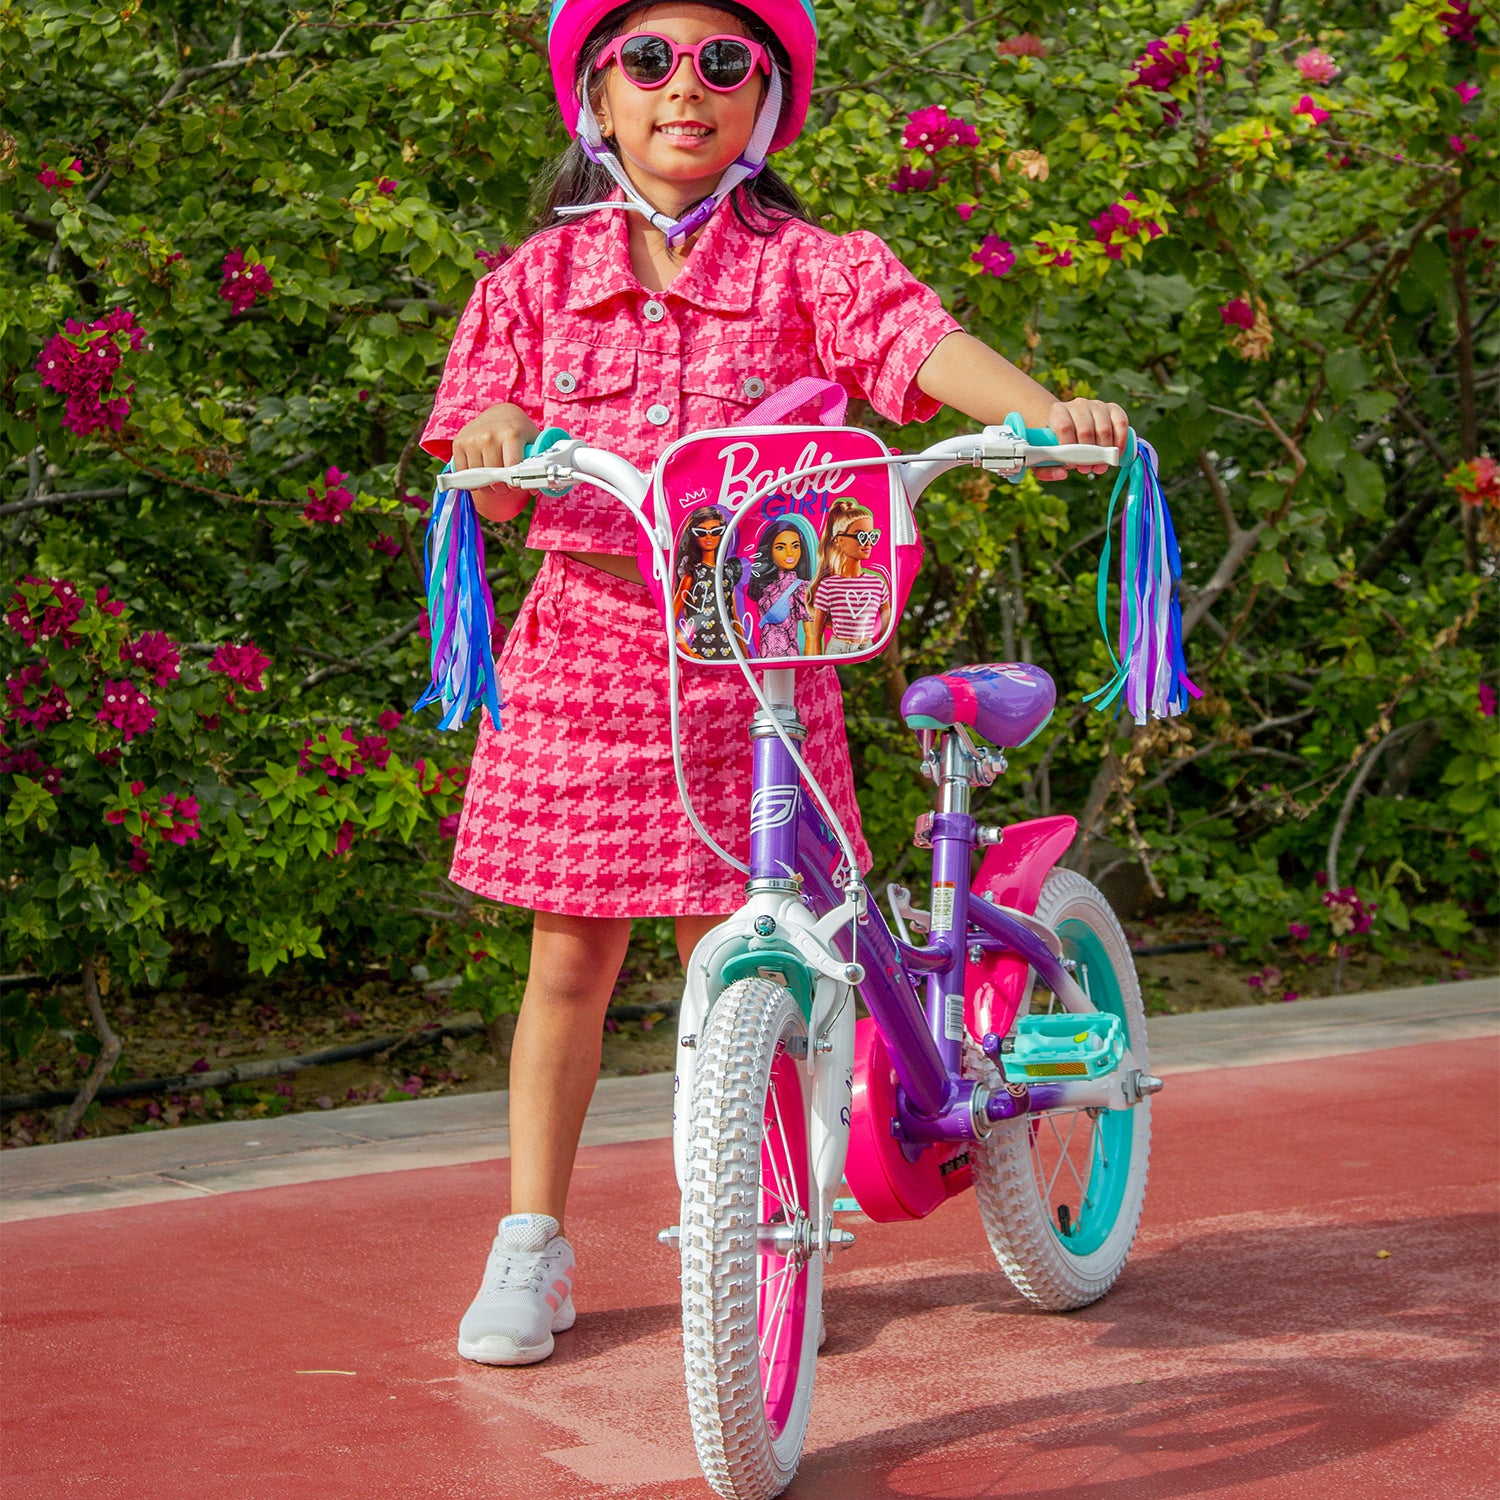 Spartan 12" Barbie Girl Bicycle